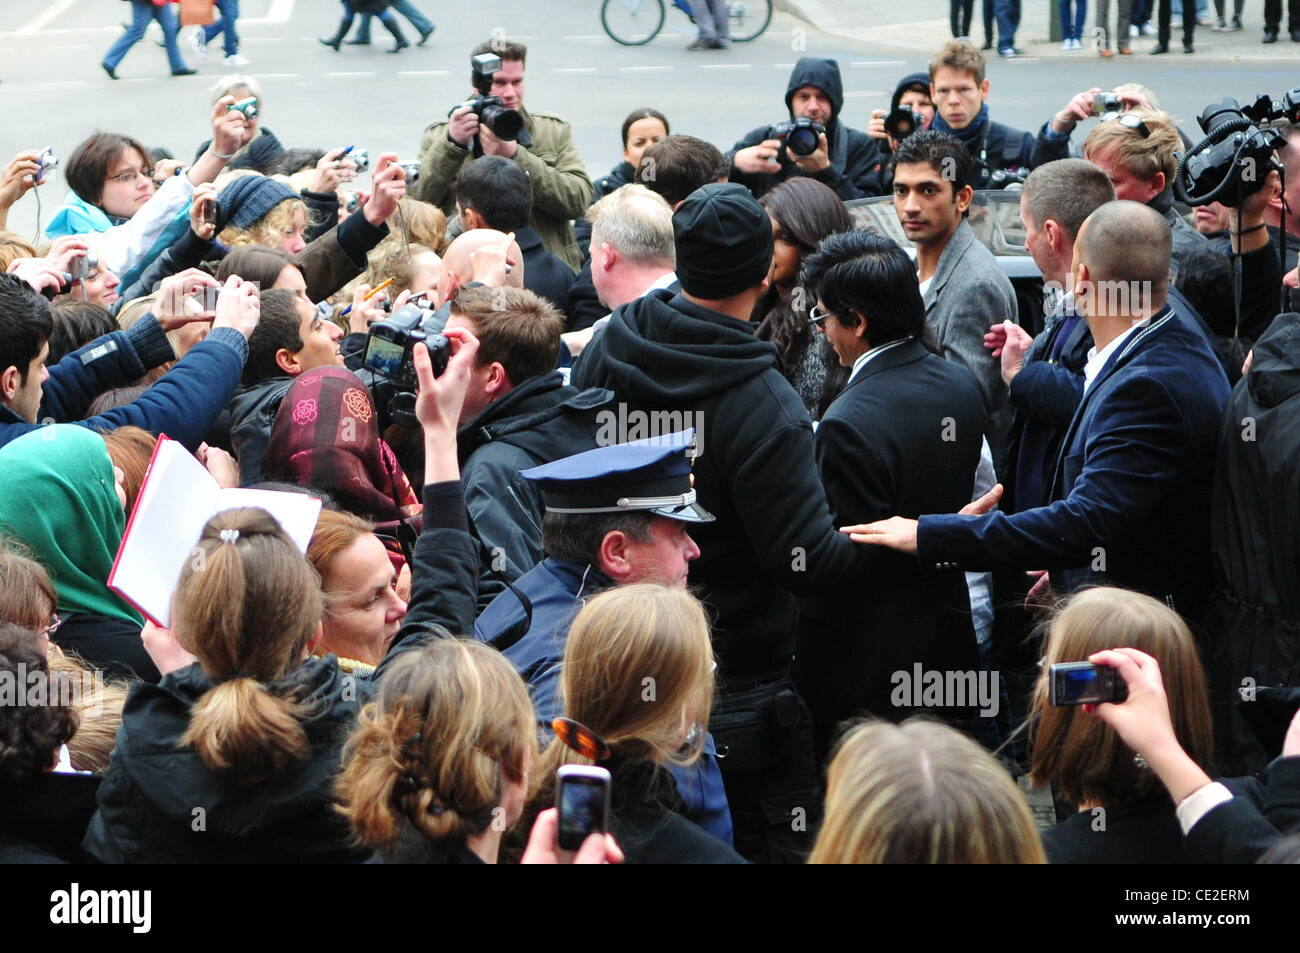 Shahrukh Khan essaie de trouver un chemin dans la foule tout en laissant à la conférence de presse pour le film 'le 2' au Friedrichstadtpalast. Berlin, Allemagne - 22.10.2010 Banque D'Images